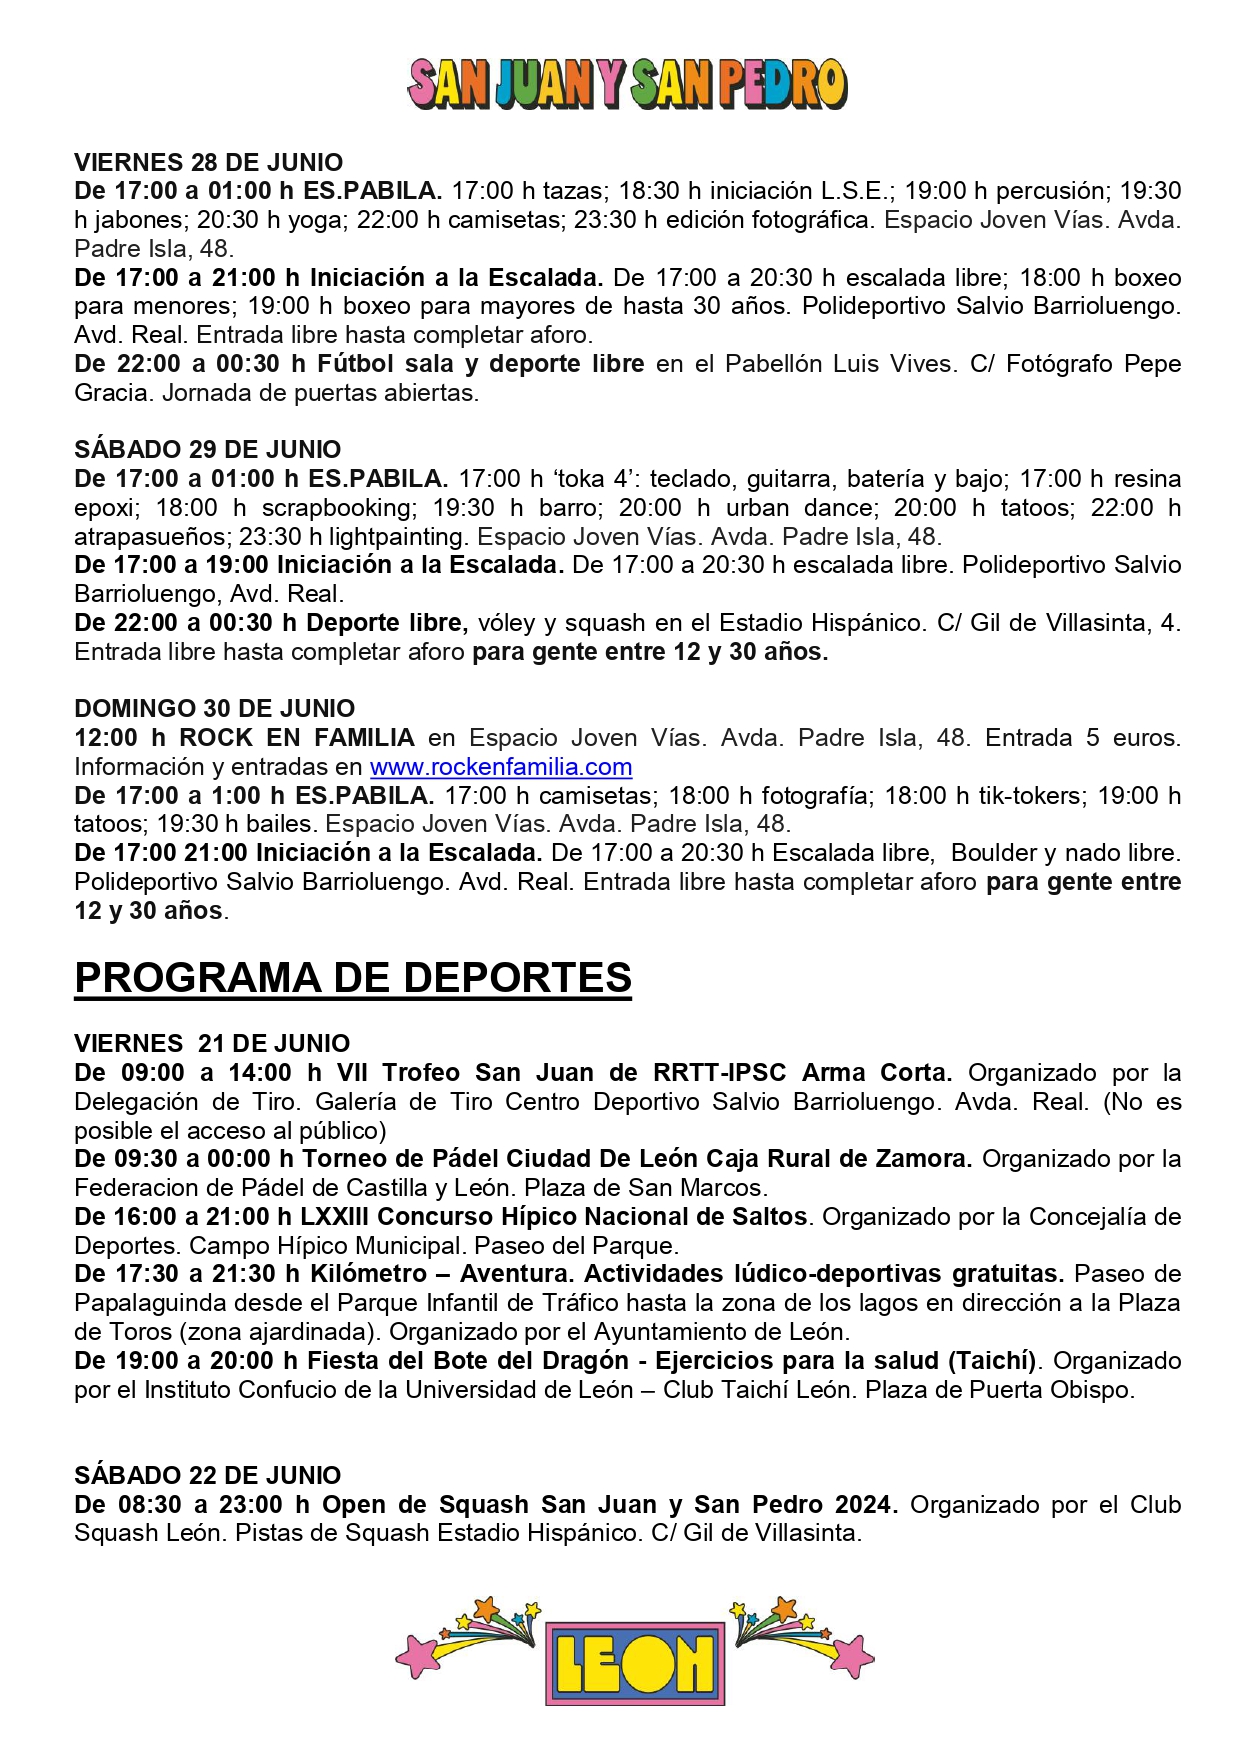 Programa de Fiestas San Juan y San Pedro en León, conciertos, deportes y todas las actividades 18